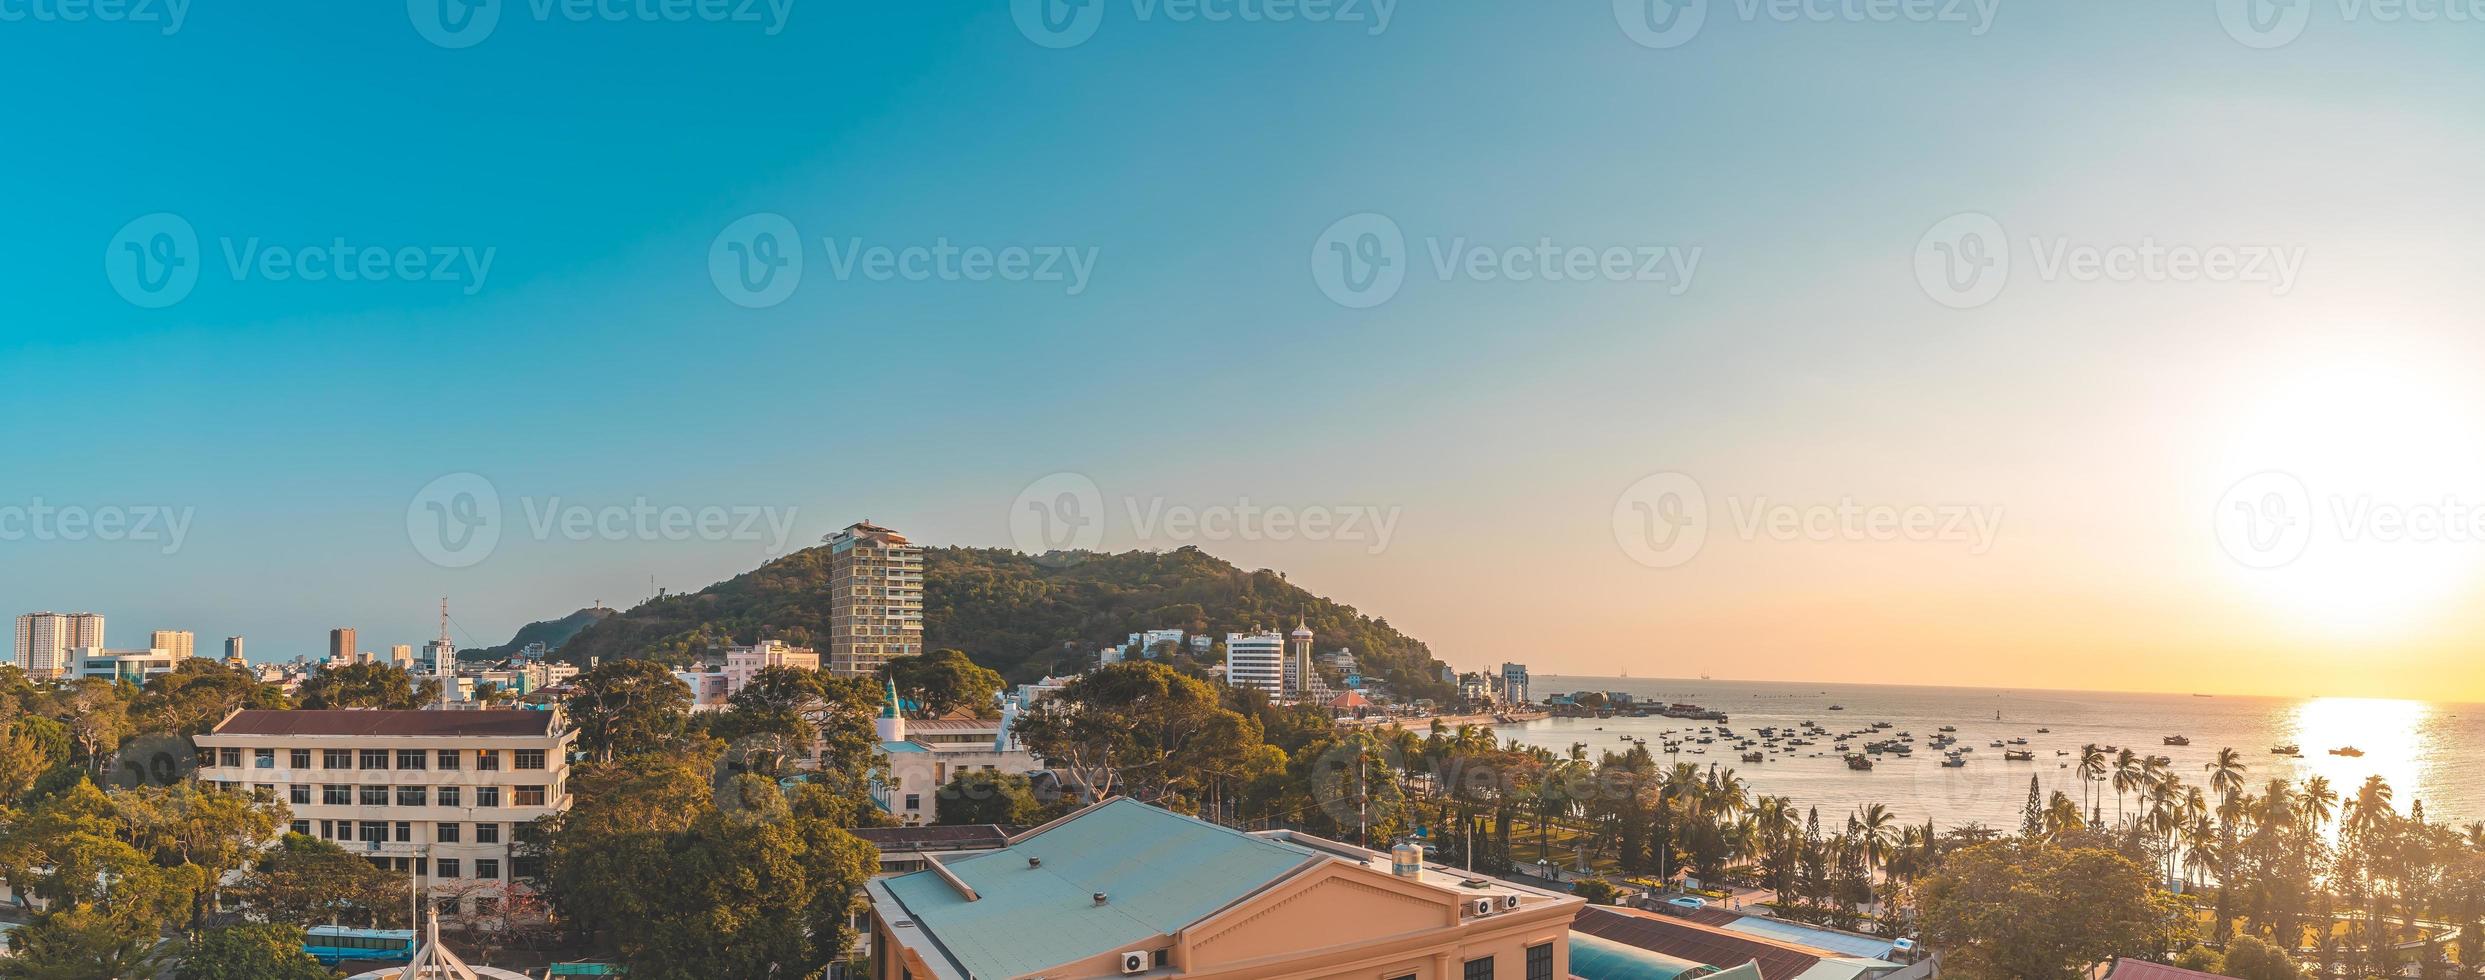 vista aérea da cidade de vung tau com belo pôr do sol e tantos barcos. vista panorâmica do litoral vung tau de cima, com ondas, litoral, ruas, coqueiros e montanha tao phung no vietnã. foto